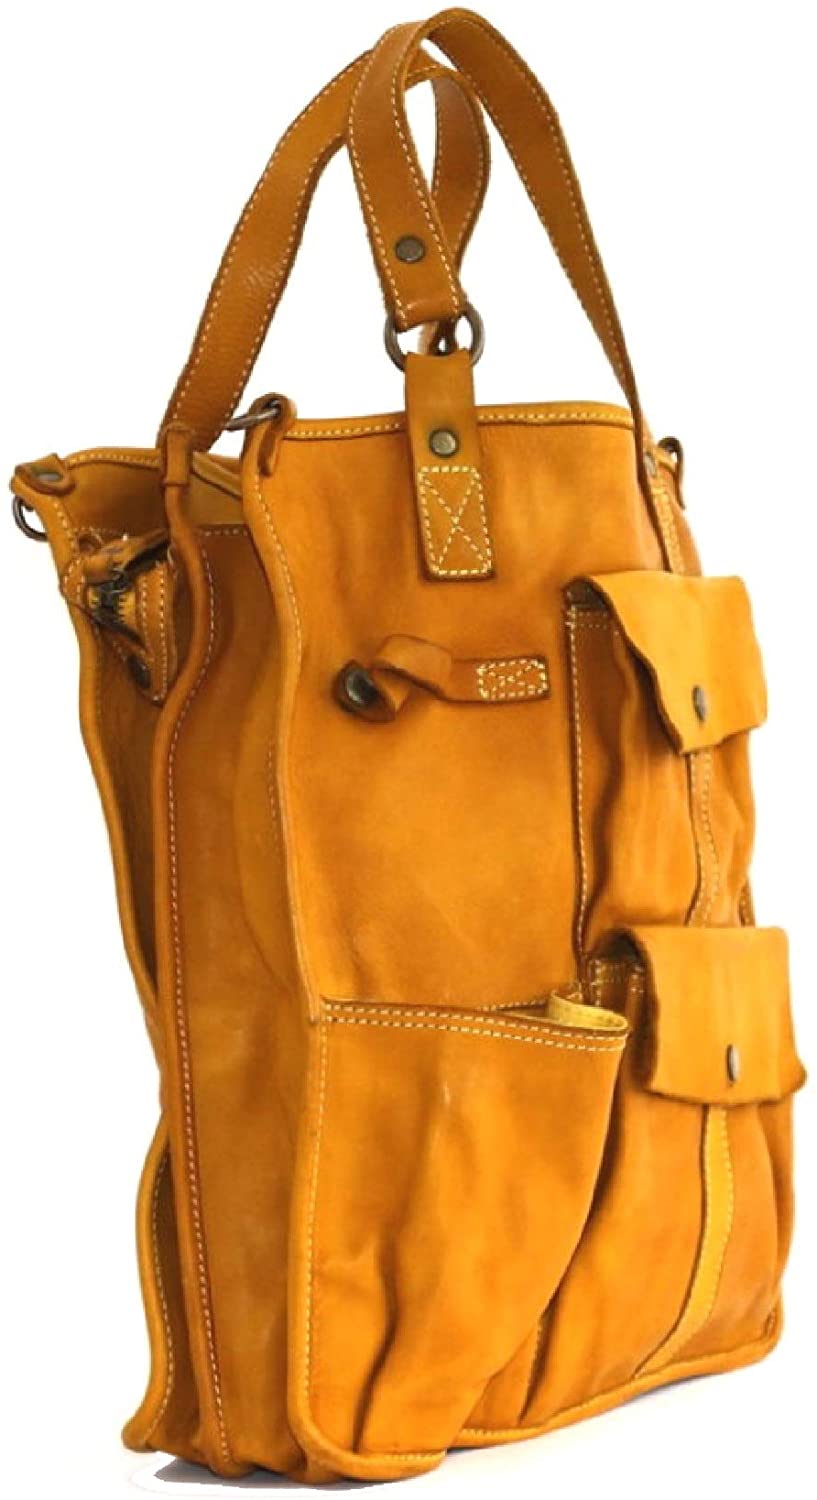 BZNA Bag Como braun Italy Designer Damen Handtasche Schultertasche Tasche Leder Shopper Neu